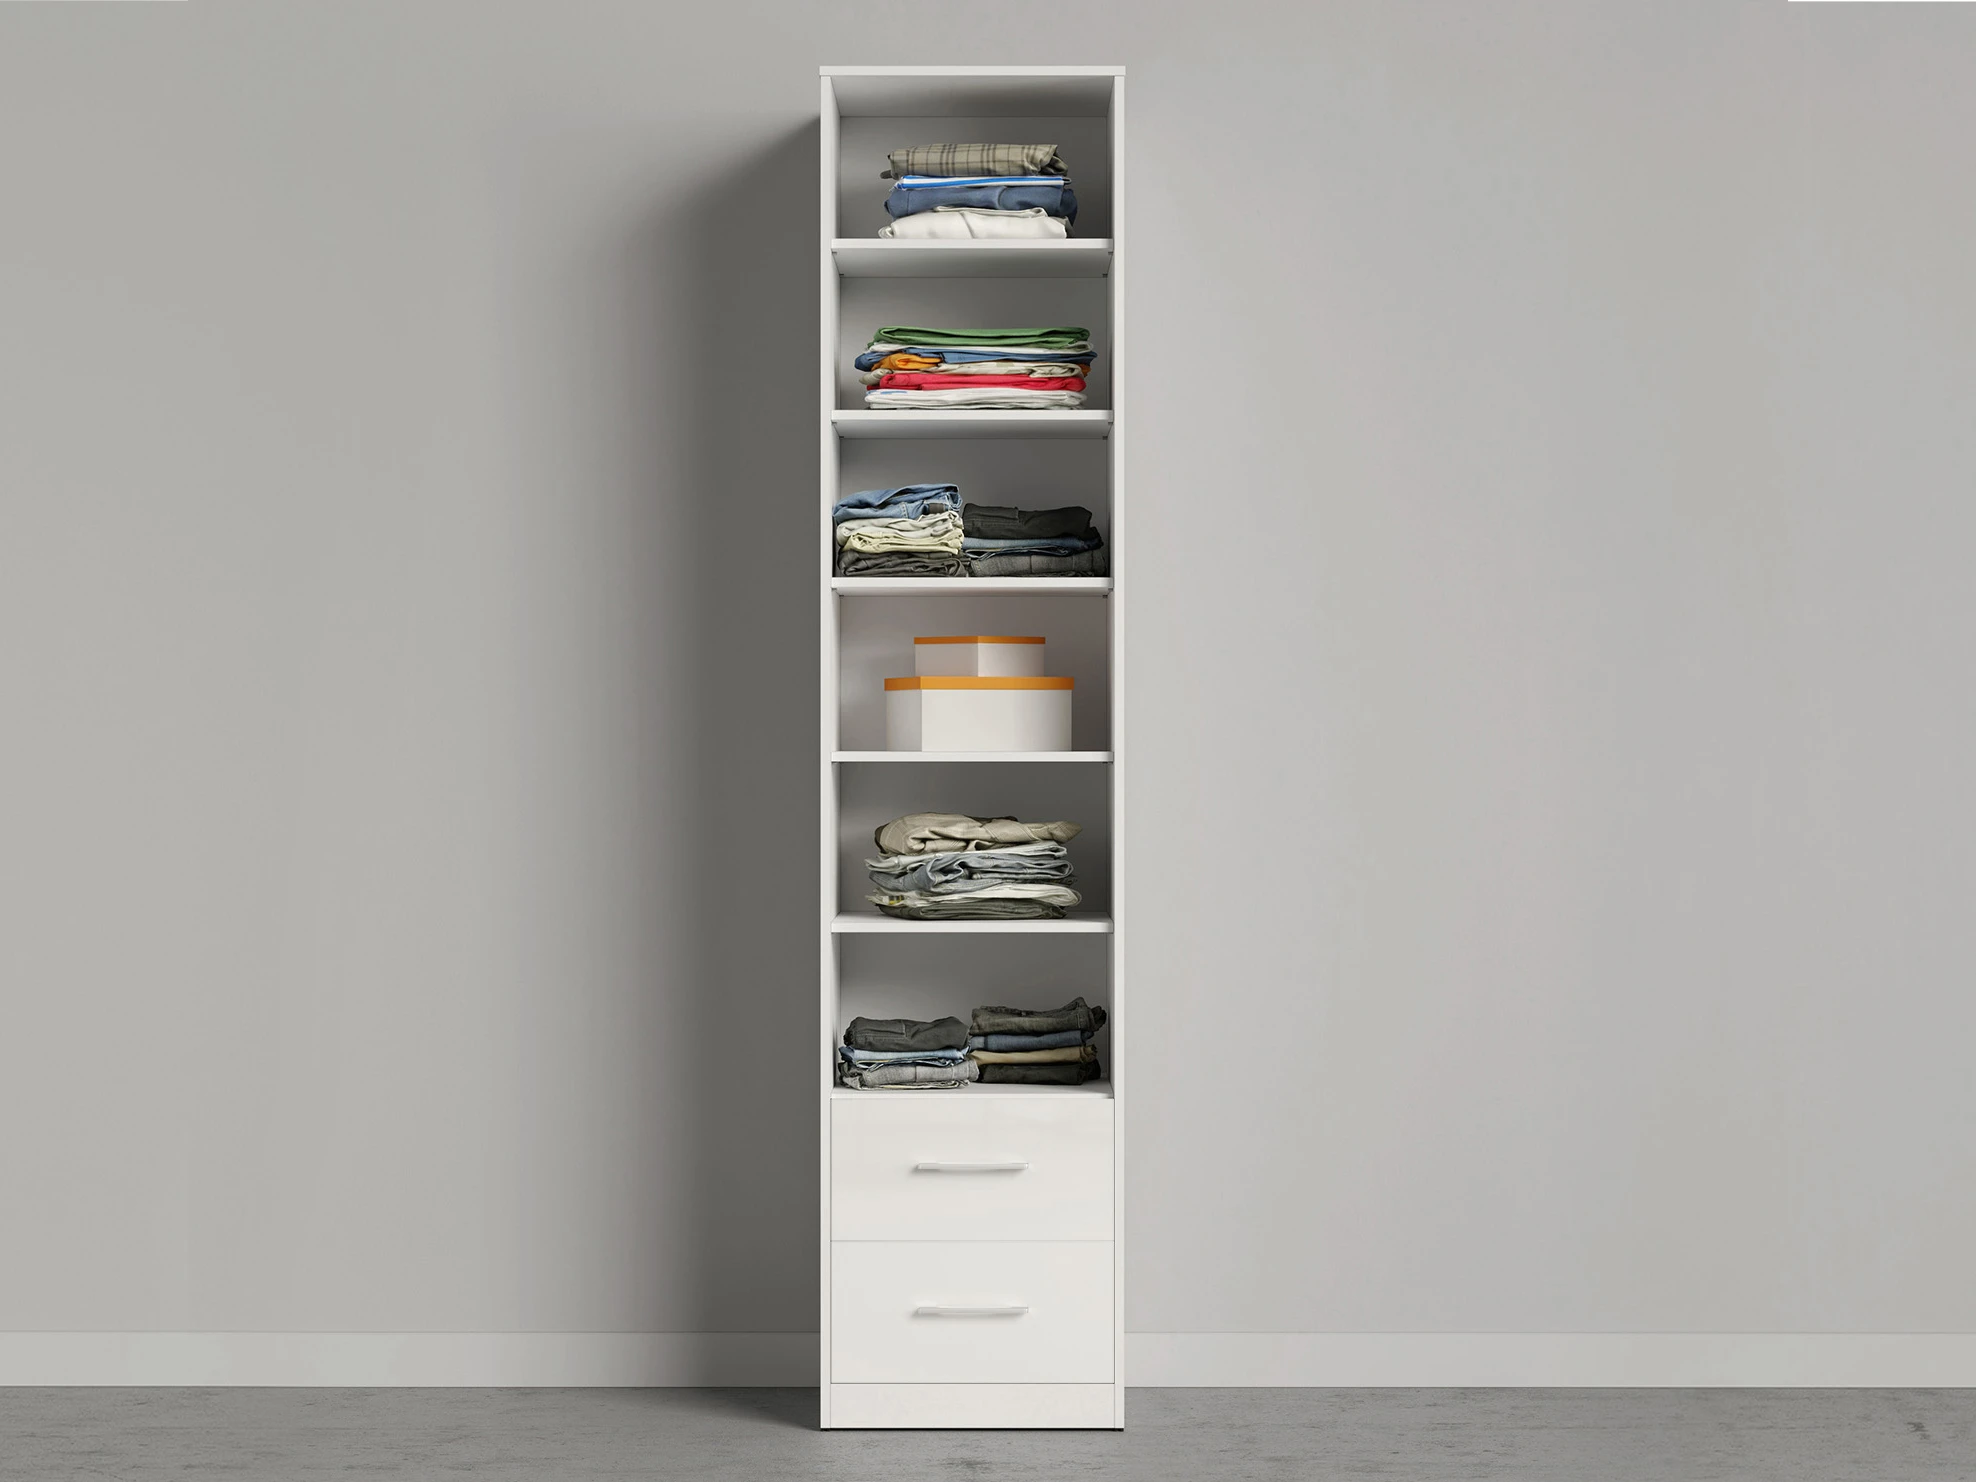 2 Cabinet 50 cm (Standard 45 cm depth) White / White Gloss